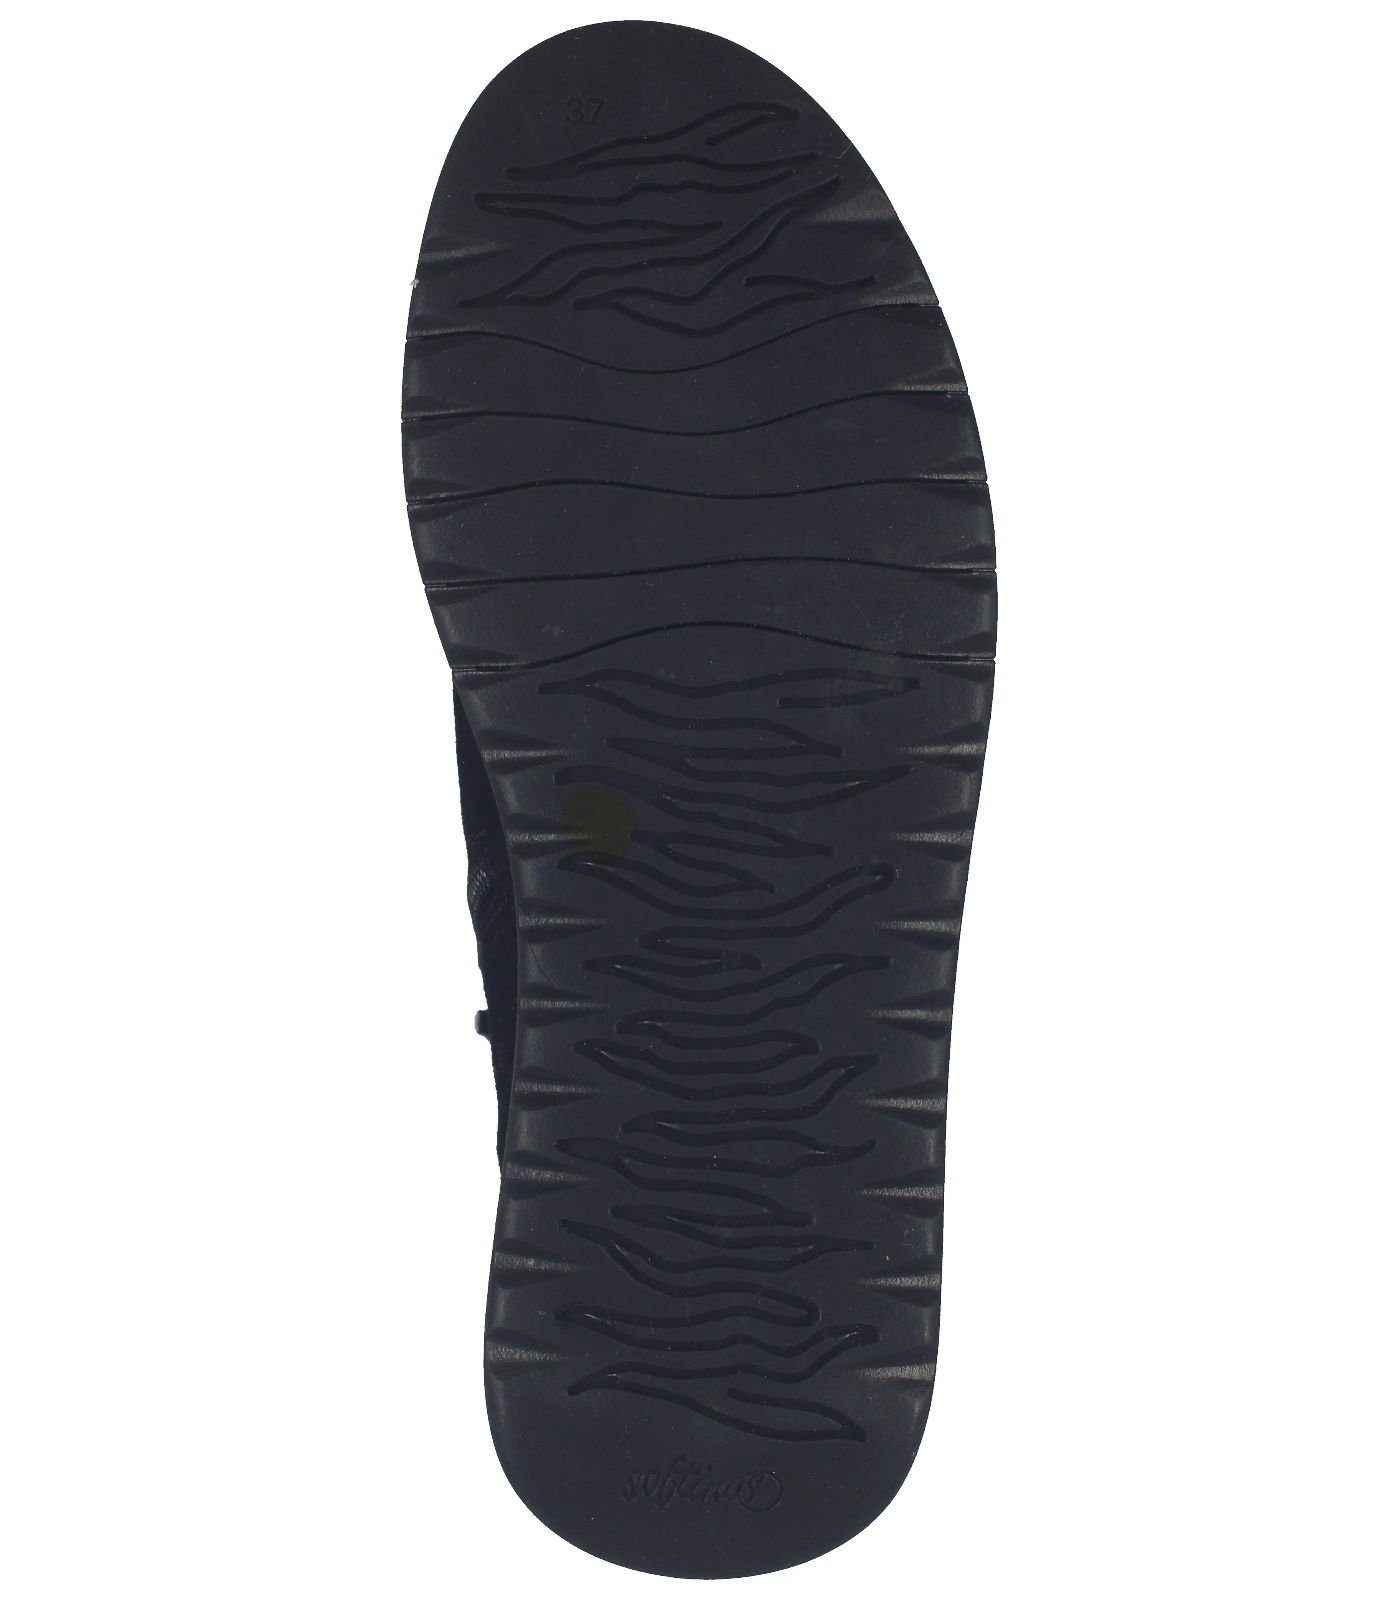 Stiefelette Schnürstiefelette (BLACK/DIESEL) Schwarz softinos Leder